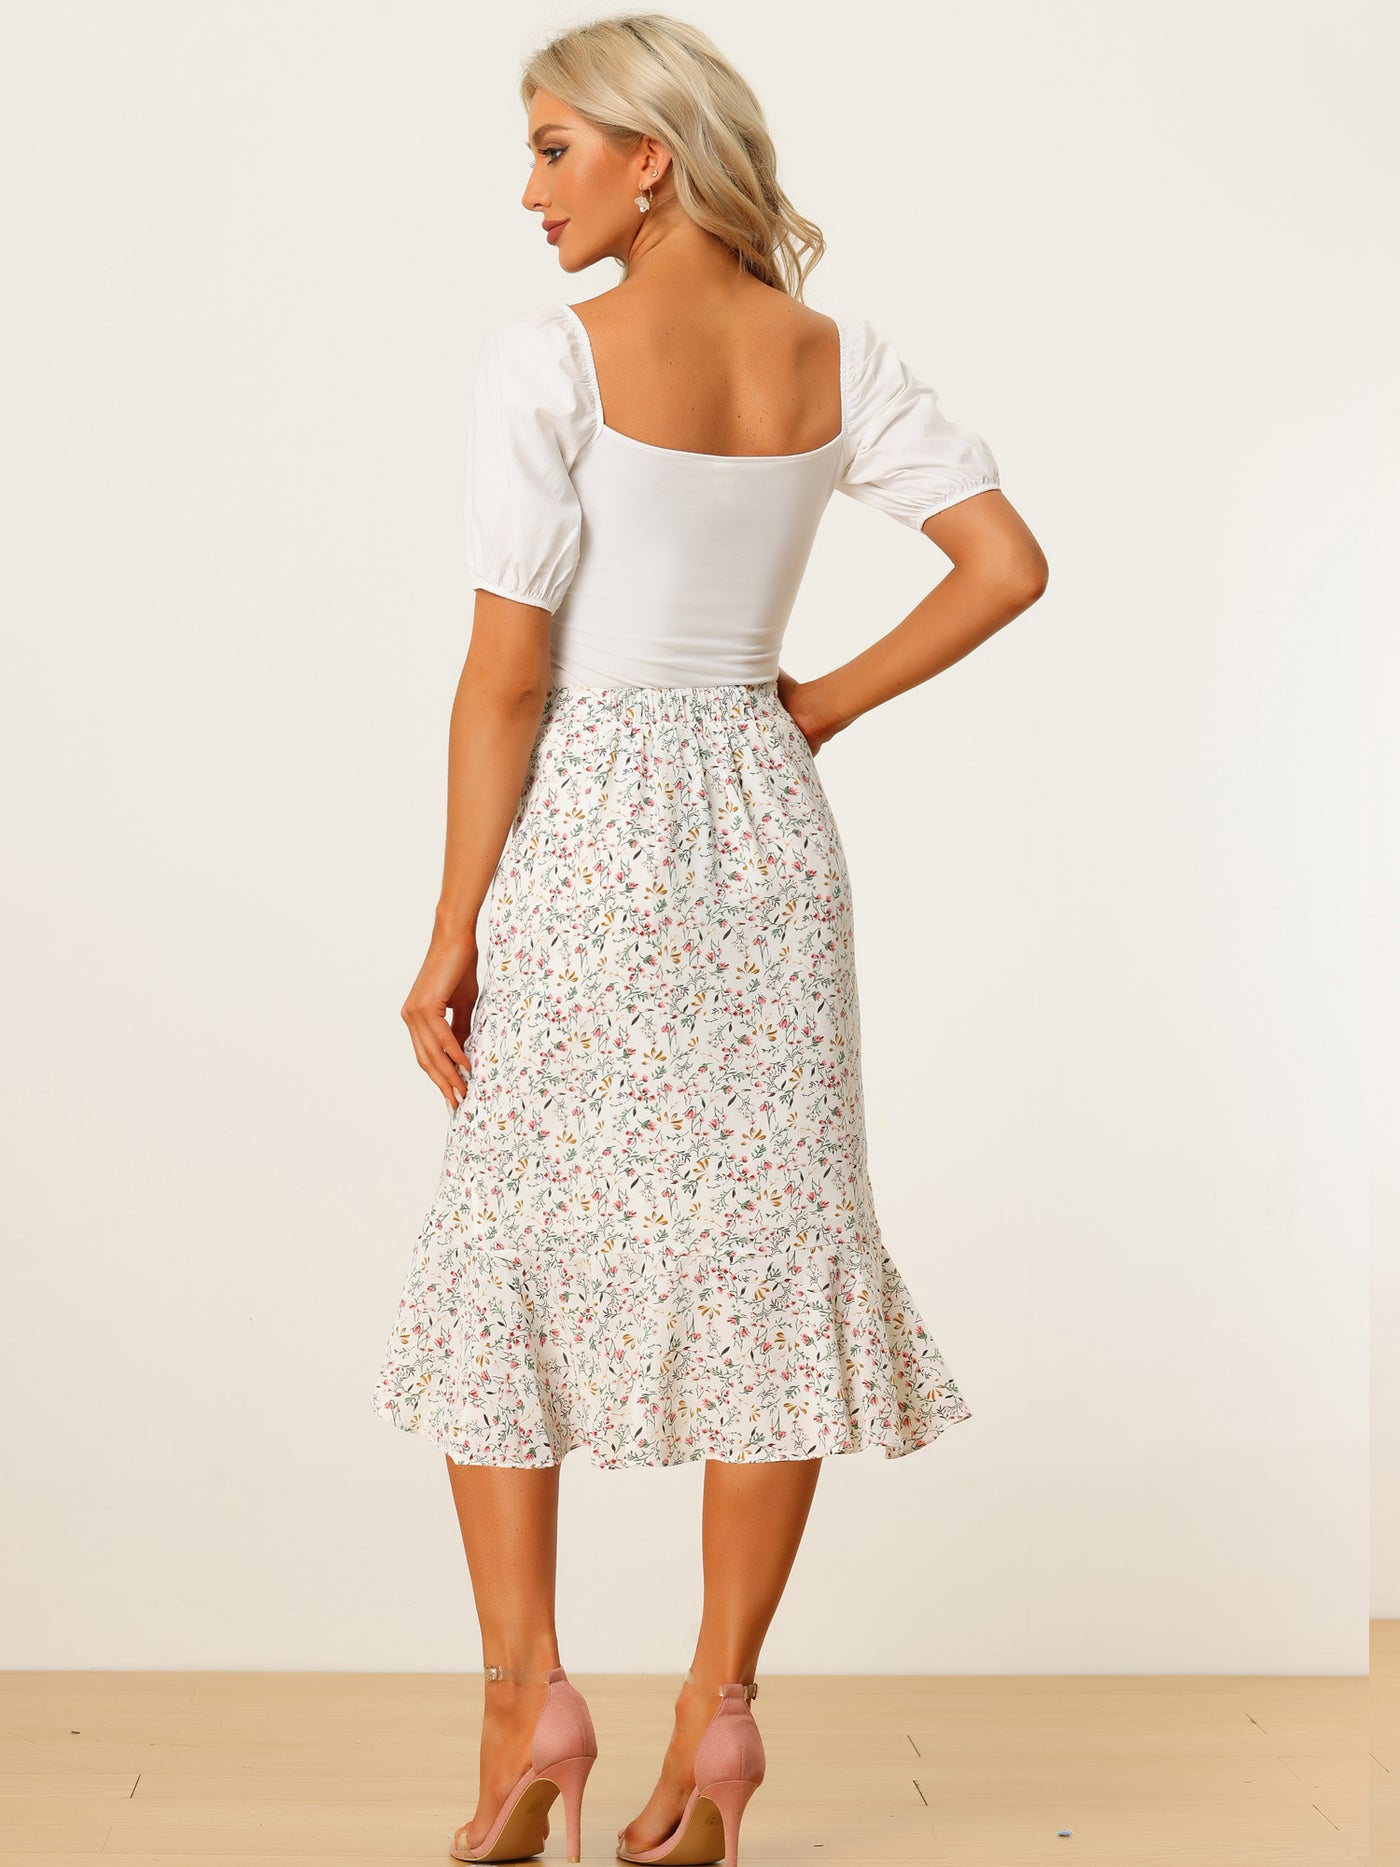 Allegra K Floral Skirt Summer Casual Drawstring Side Ruffled Midi Skirt